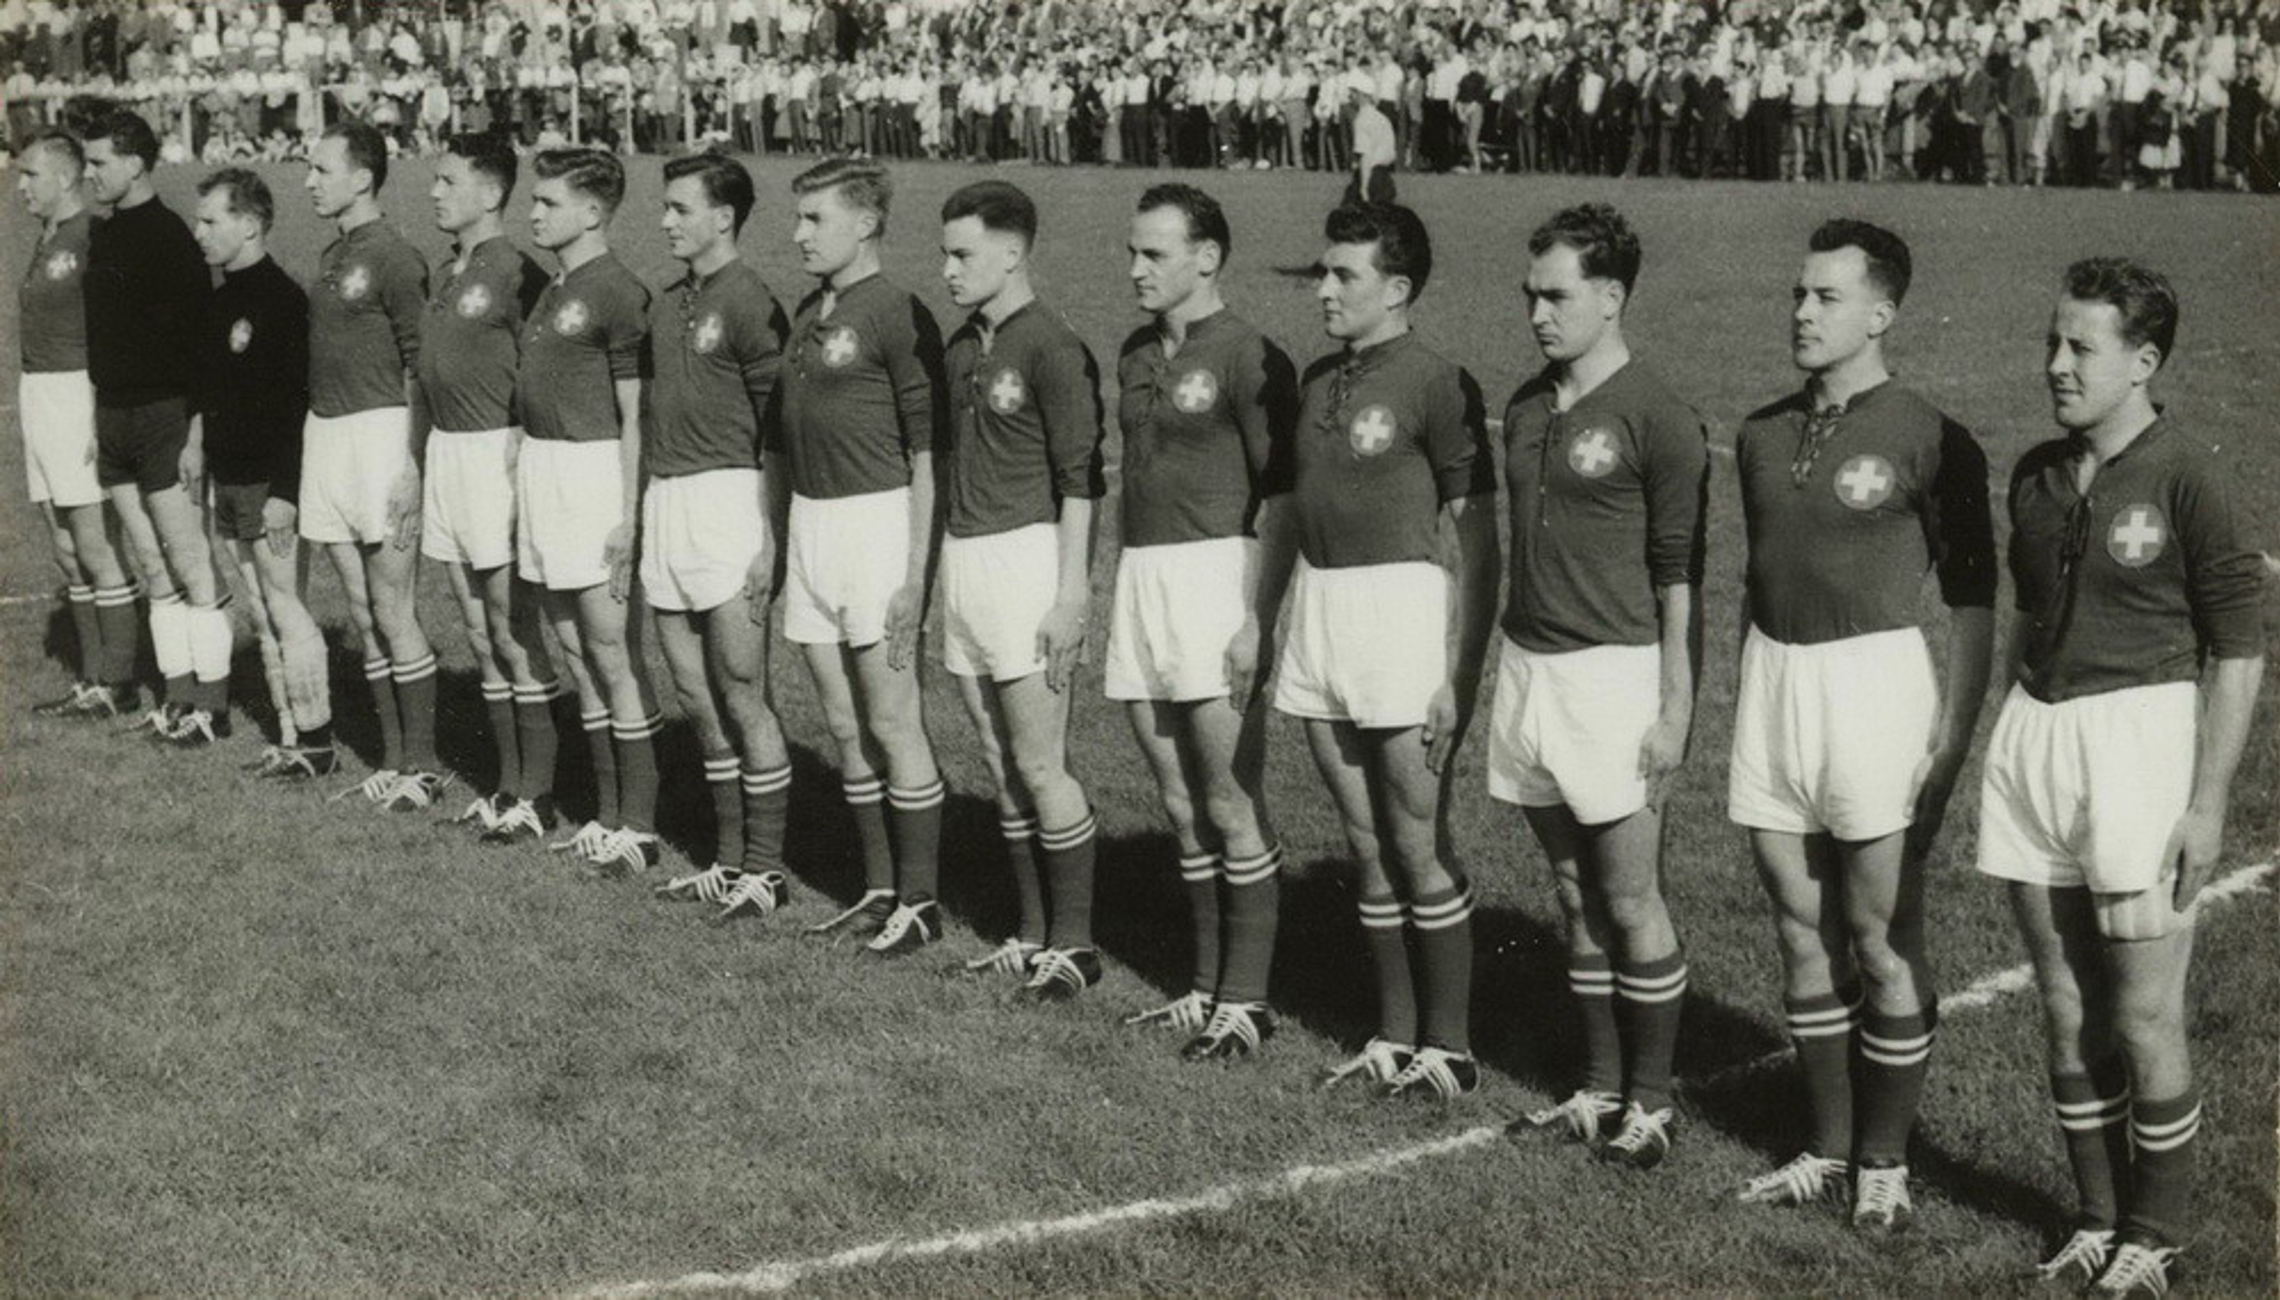 30.9.1956 Schweiz - Deutschland 6:15 (4:7), Winterthur Schützenwiese, 6000 Zuschauer, Schiedsrichter Delaitre (FRA)